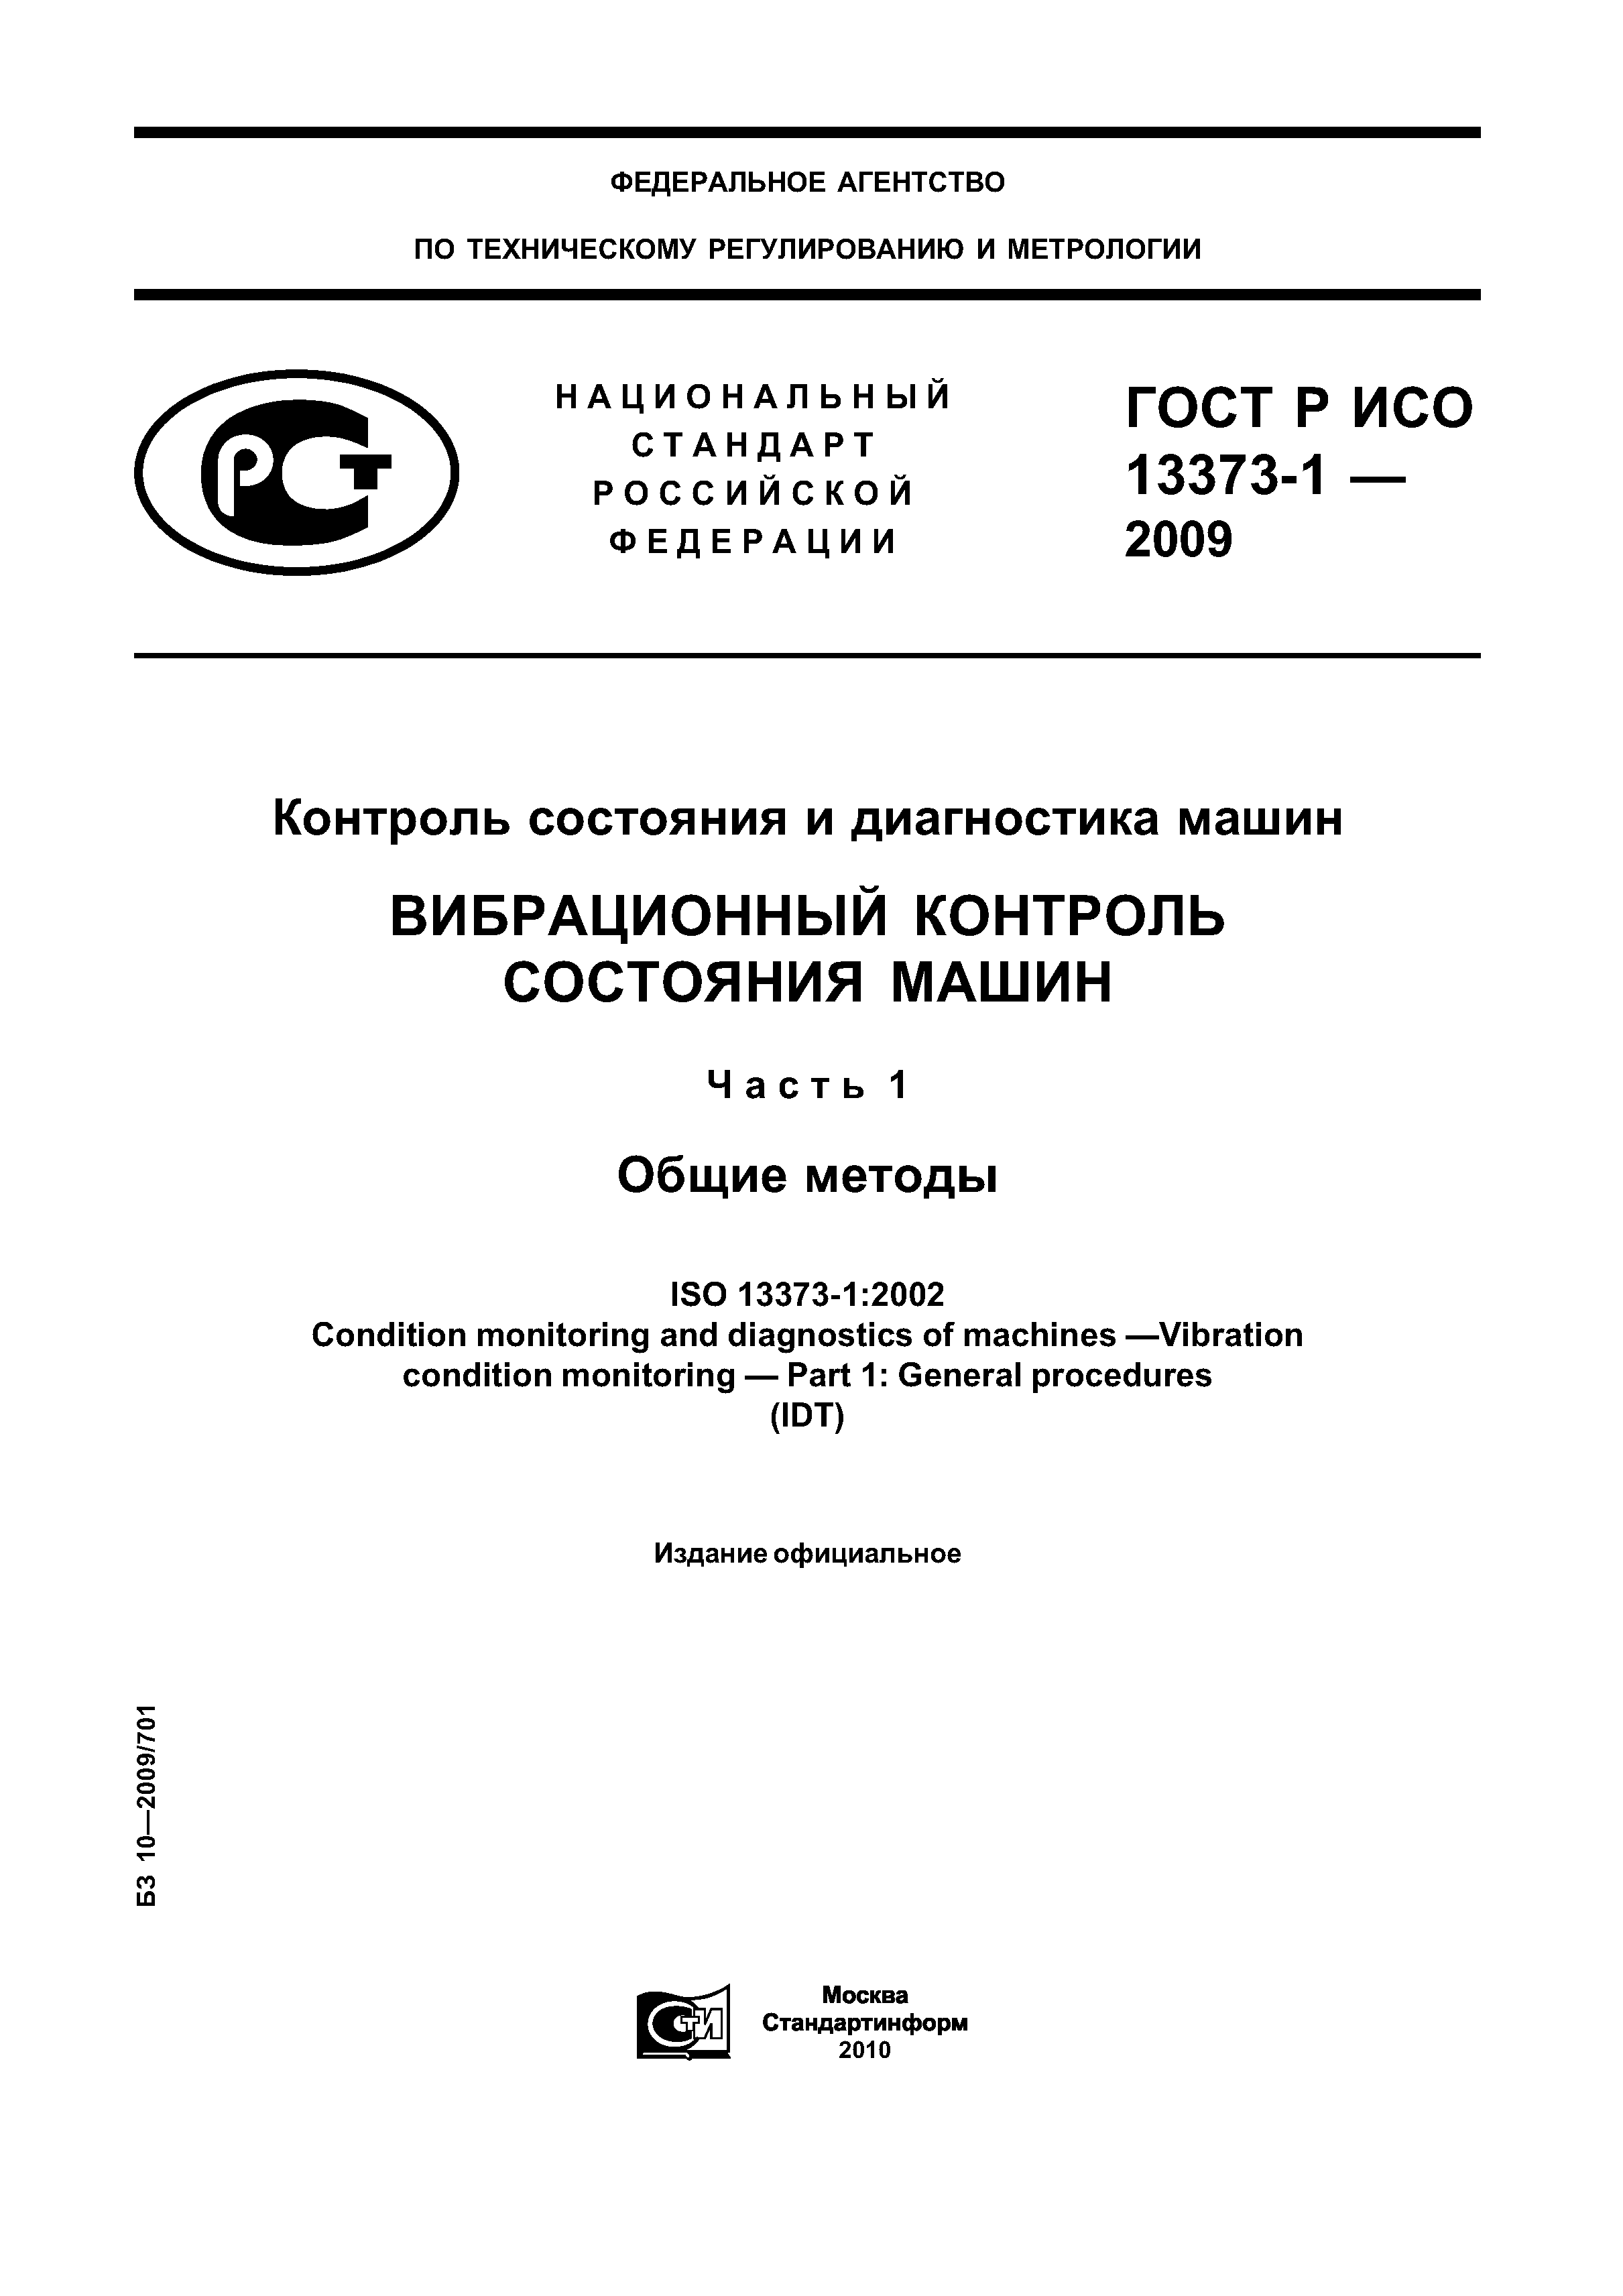 ГОСТ Р ИСО 13373-1-2009